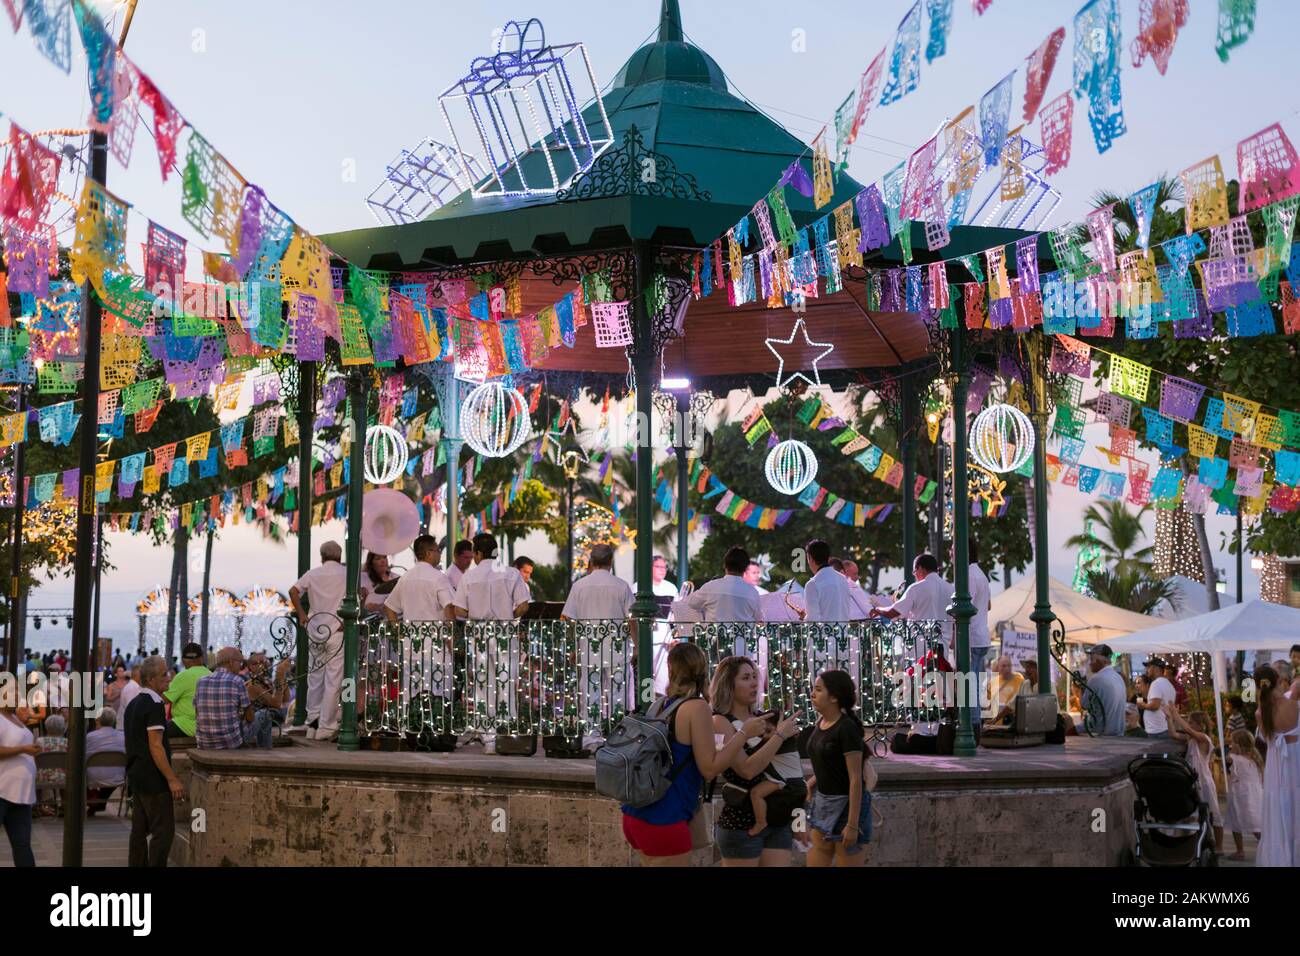 Messico, Puerto Vallarta, Jalisco, bandstand decorato per un festival con band e persone Foto Stock